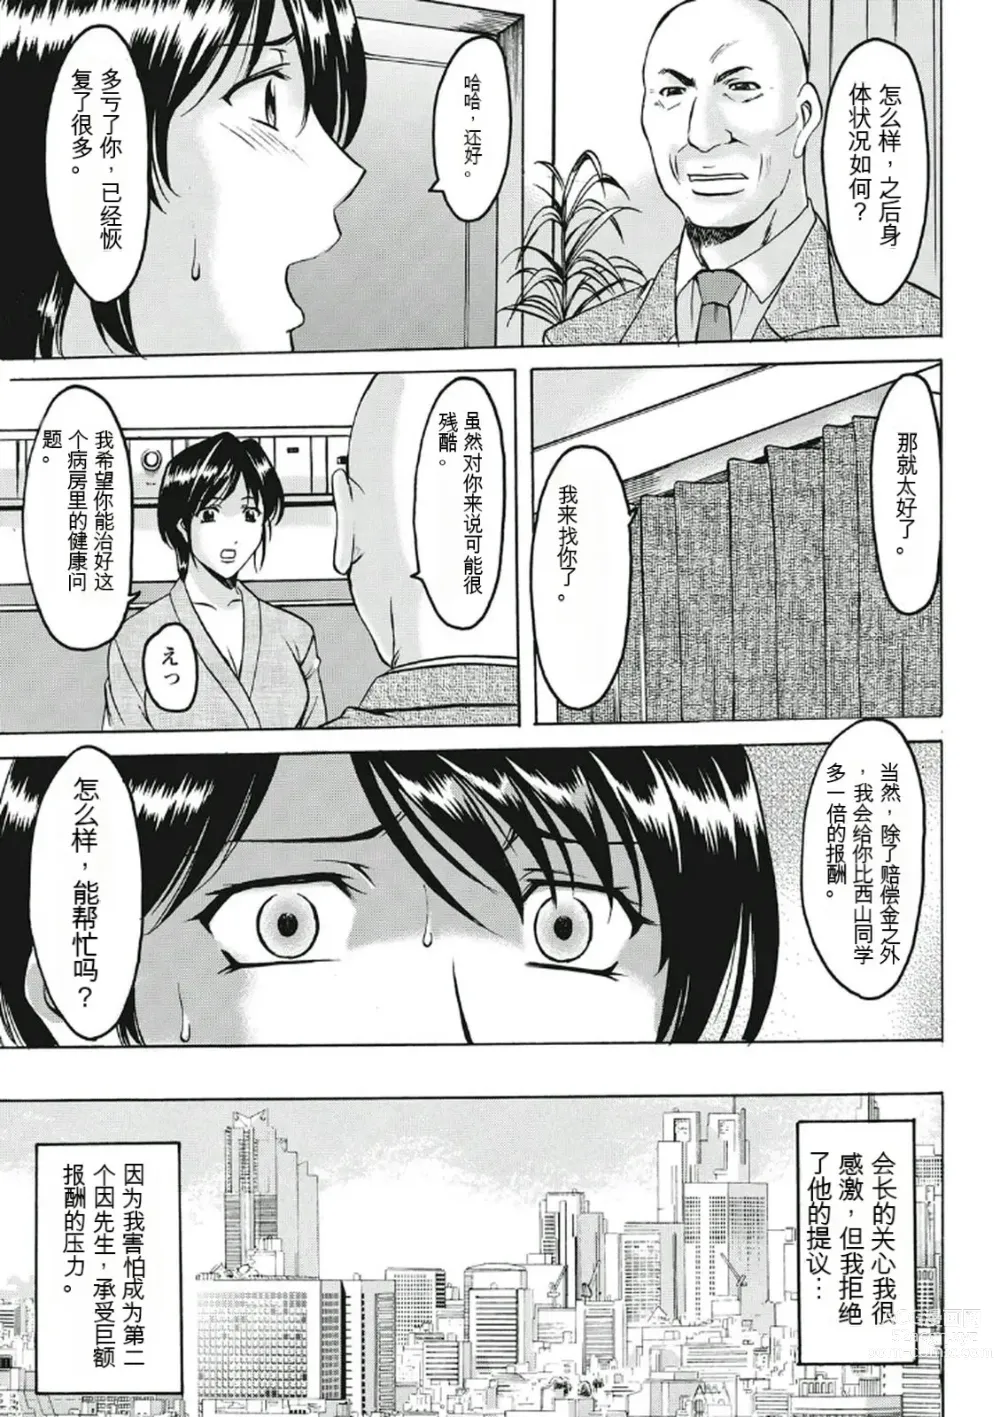 Page 195 of manga Chijoku Byoutou -Hakui no Datenshi-